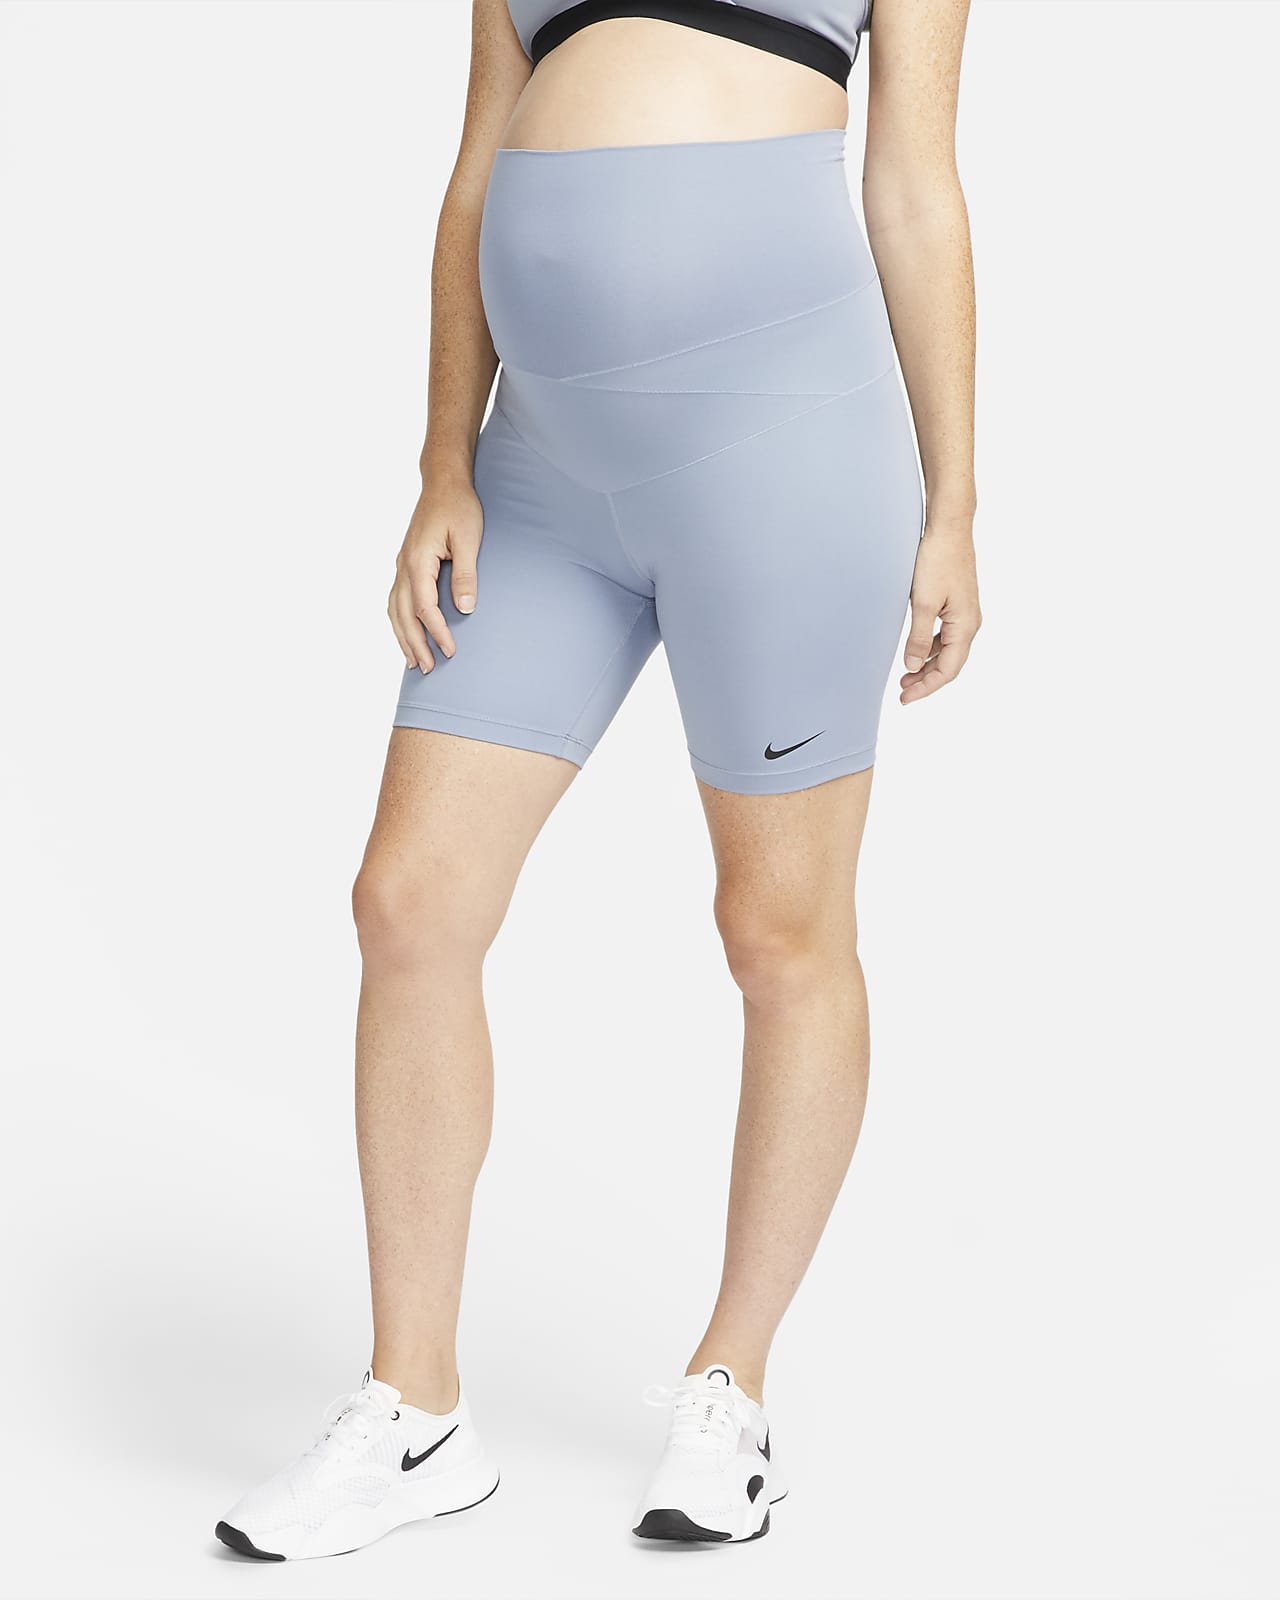 Short Nike One (M) 18 cm pour femme (maternité)